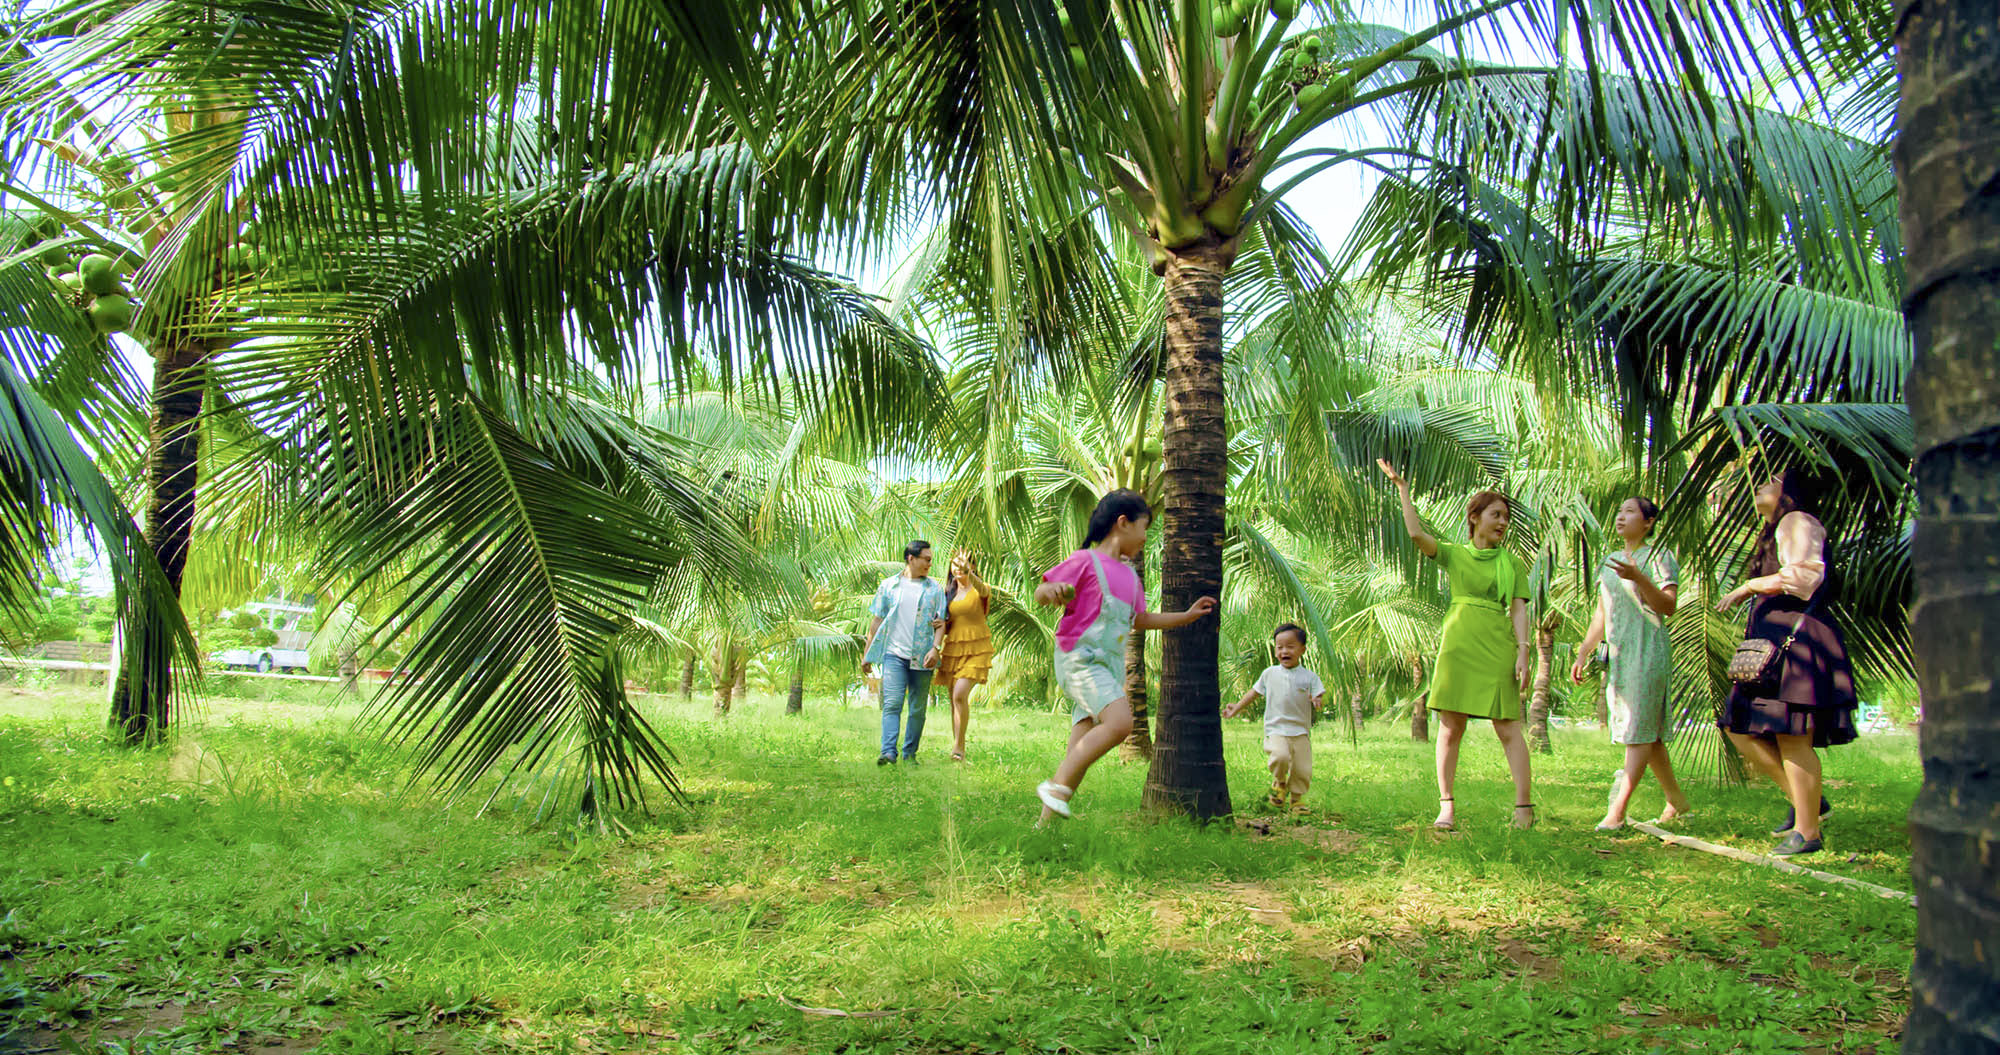 Farm Dừa với không gian xanh mát với những hàng dừa sai trĩu quả vươn mình trên bãi cát trắng.